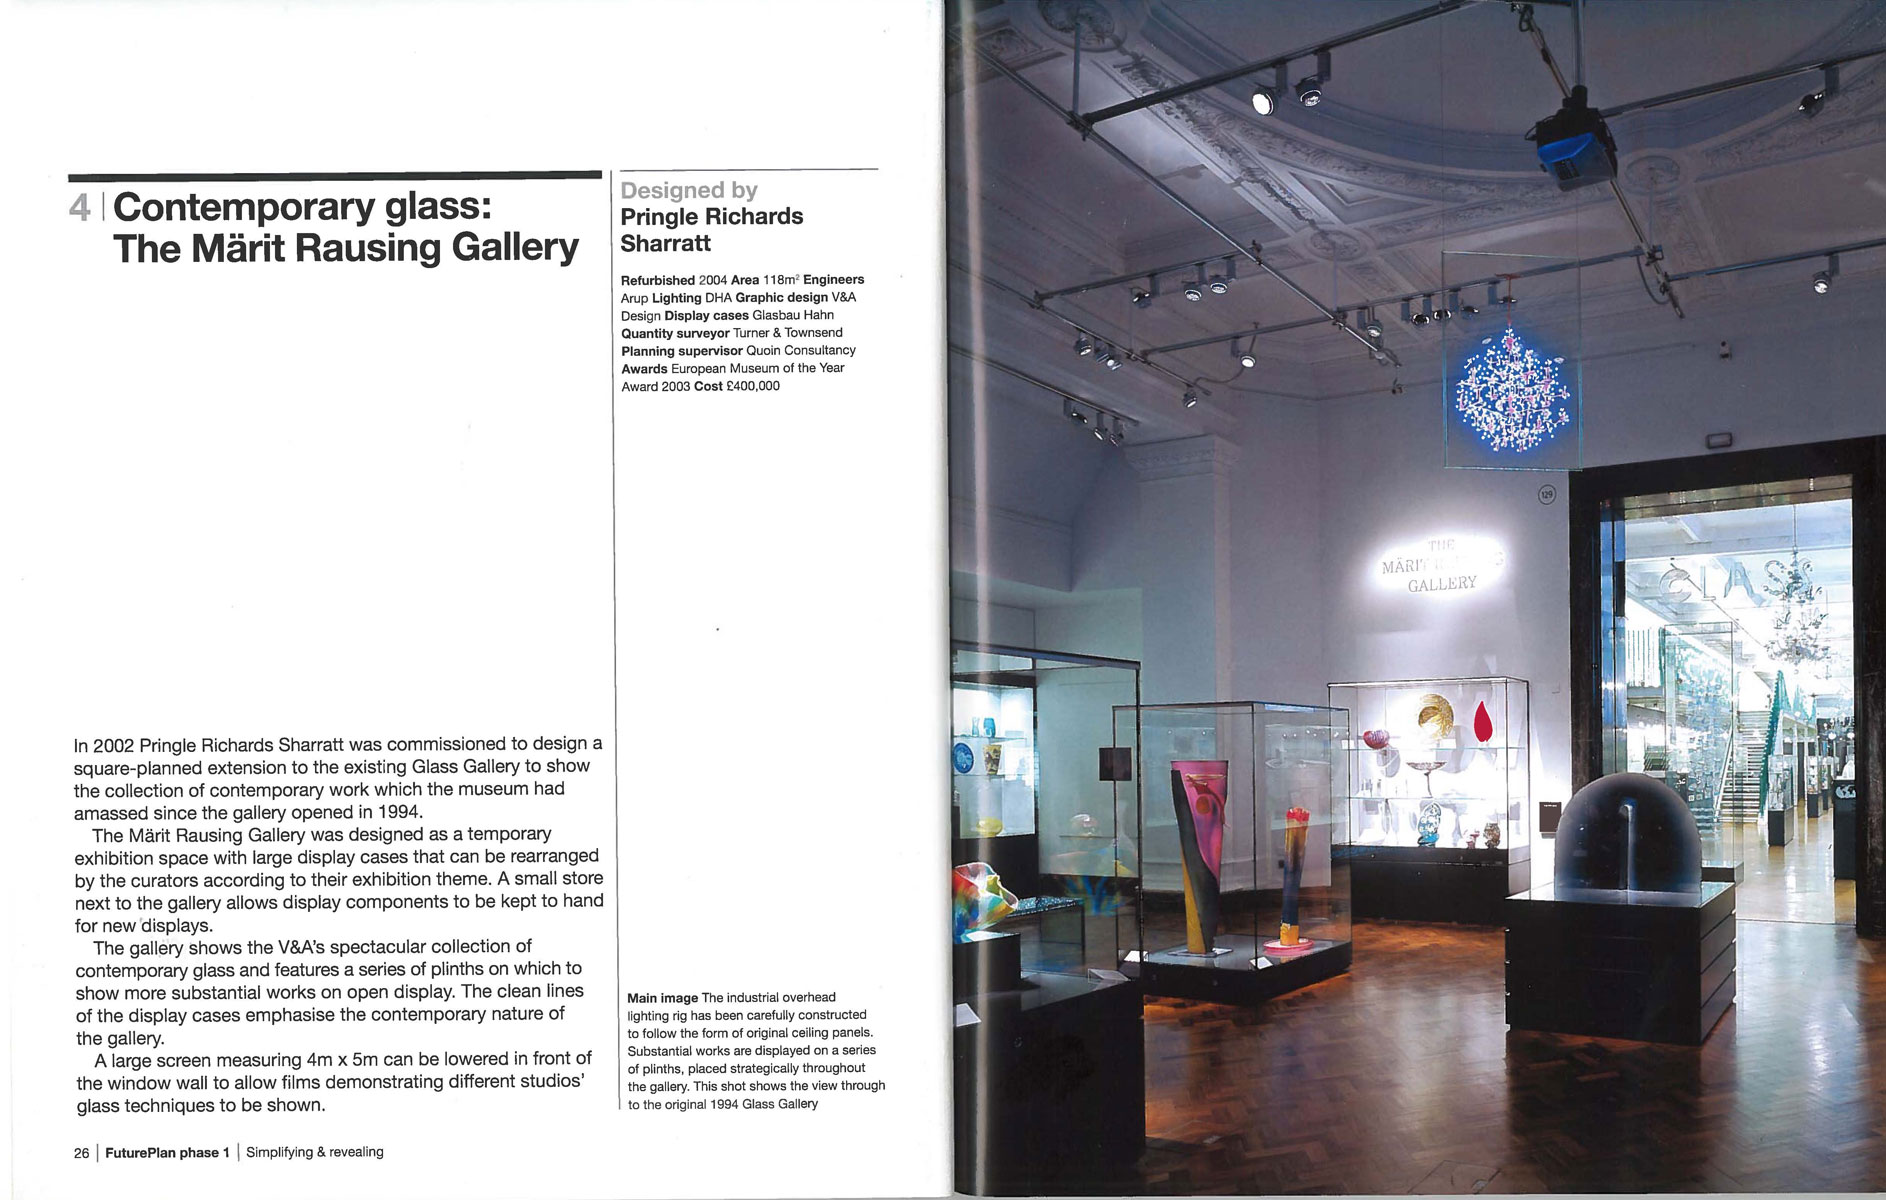 V&A FuturePlan Publication - Contemporary Glass Gallery